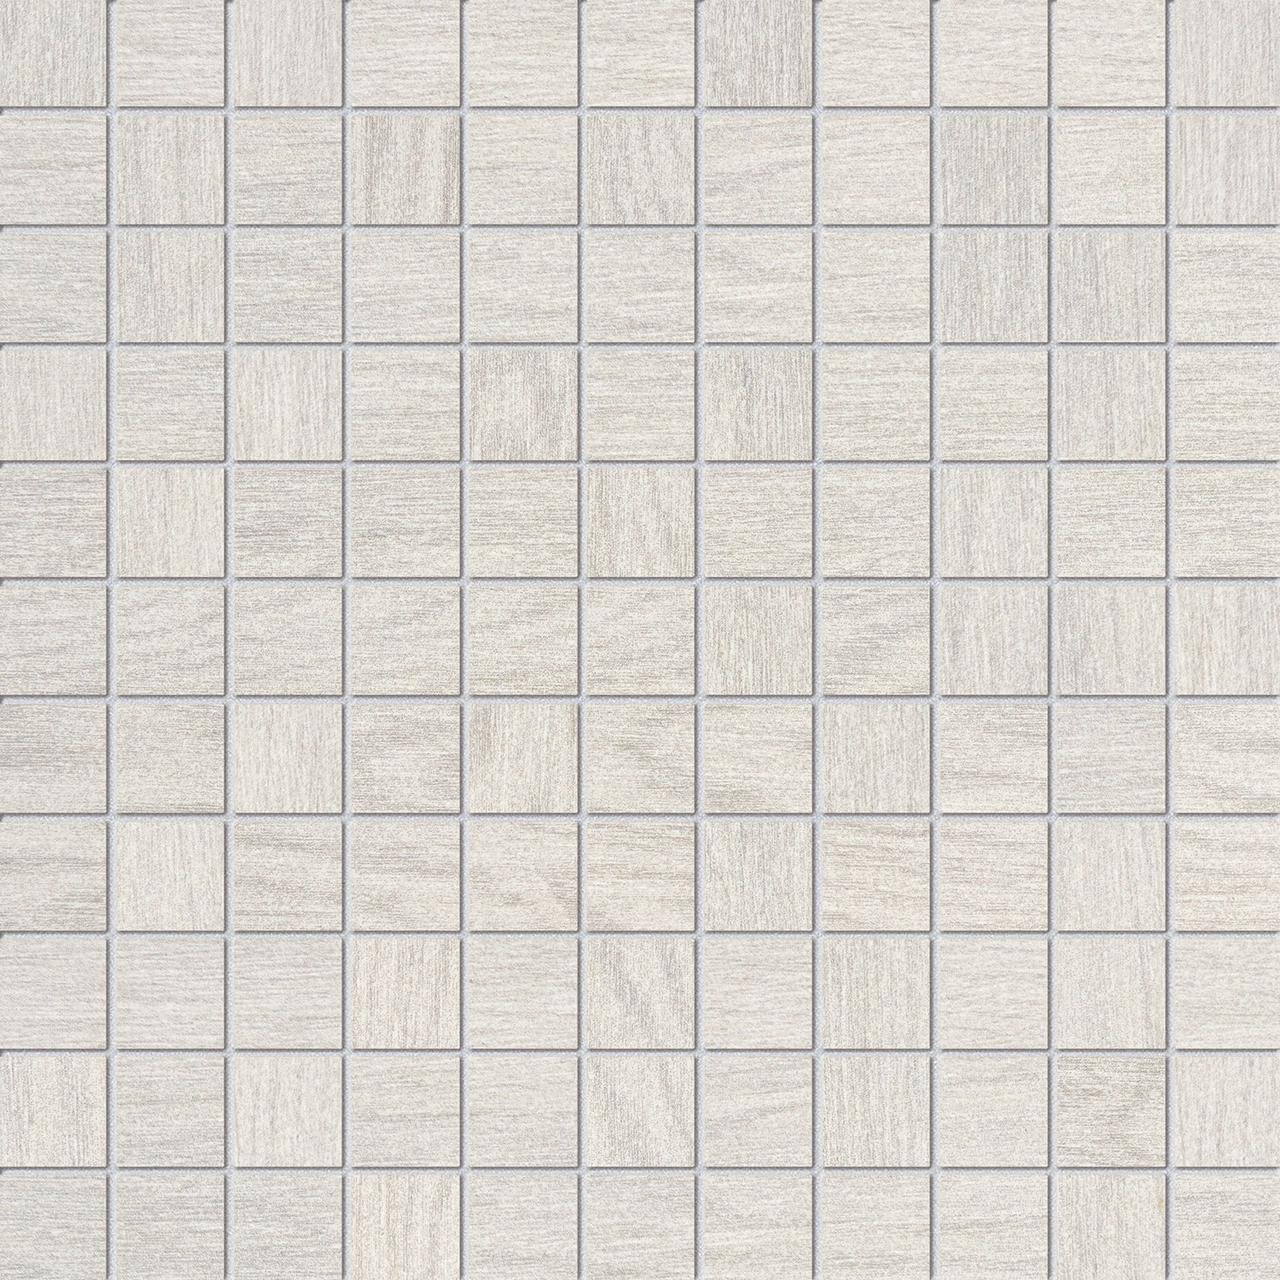 Inverno mozaika white 30*30